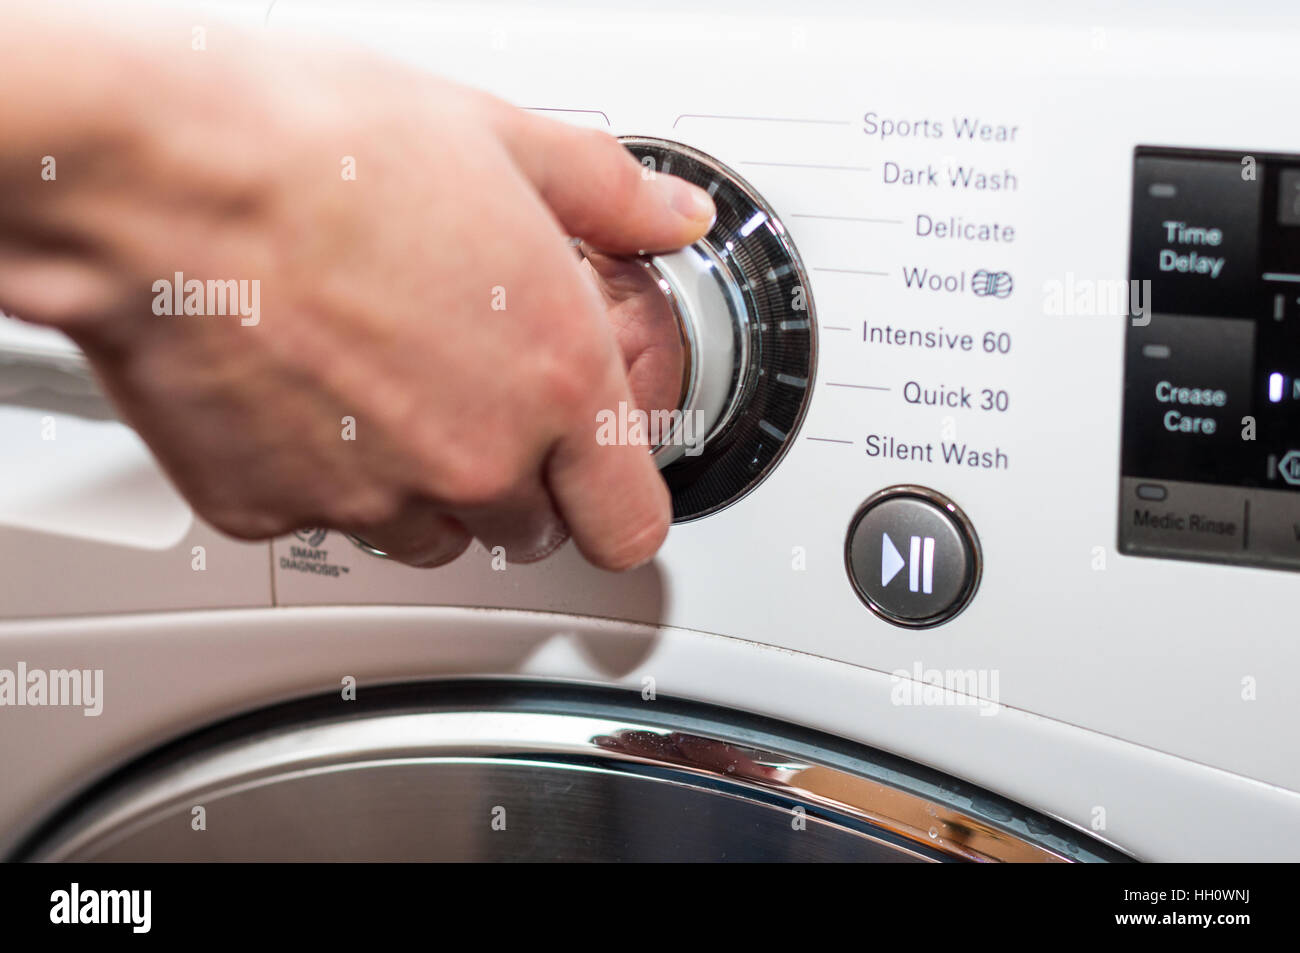 Waschtag - Waschmaschine-Programm einrichten Stockfoto